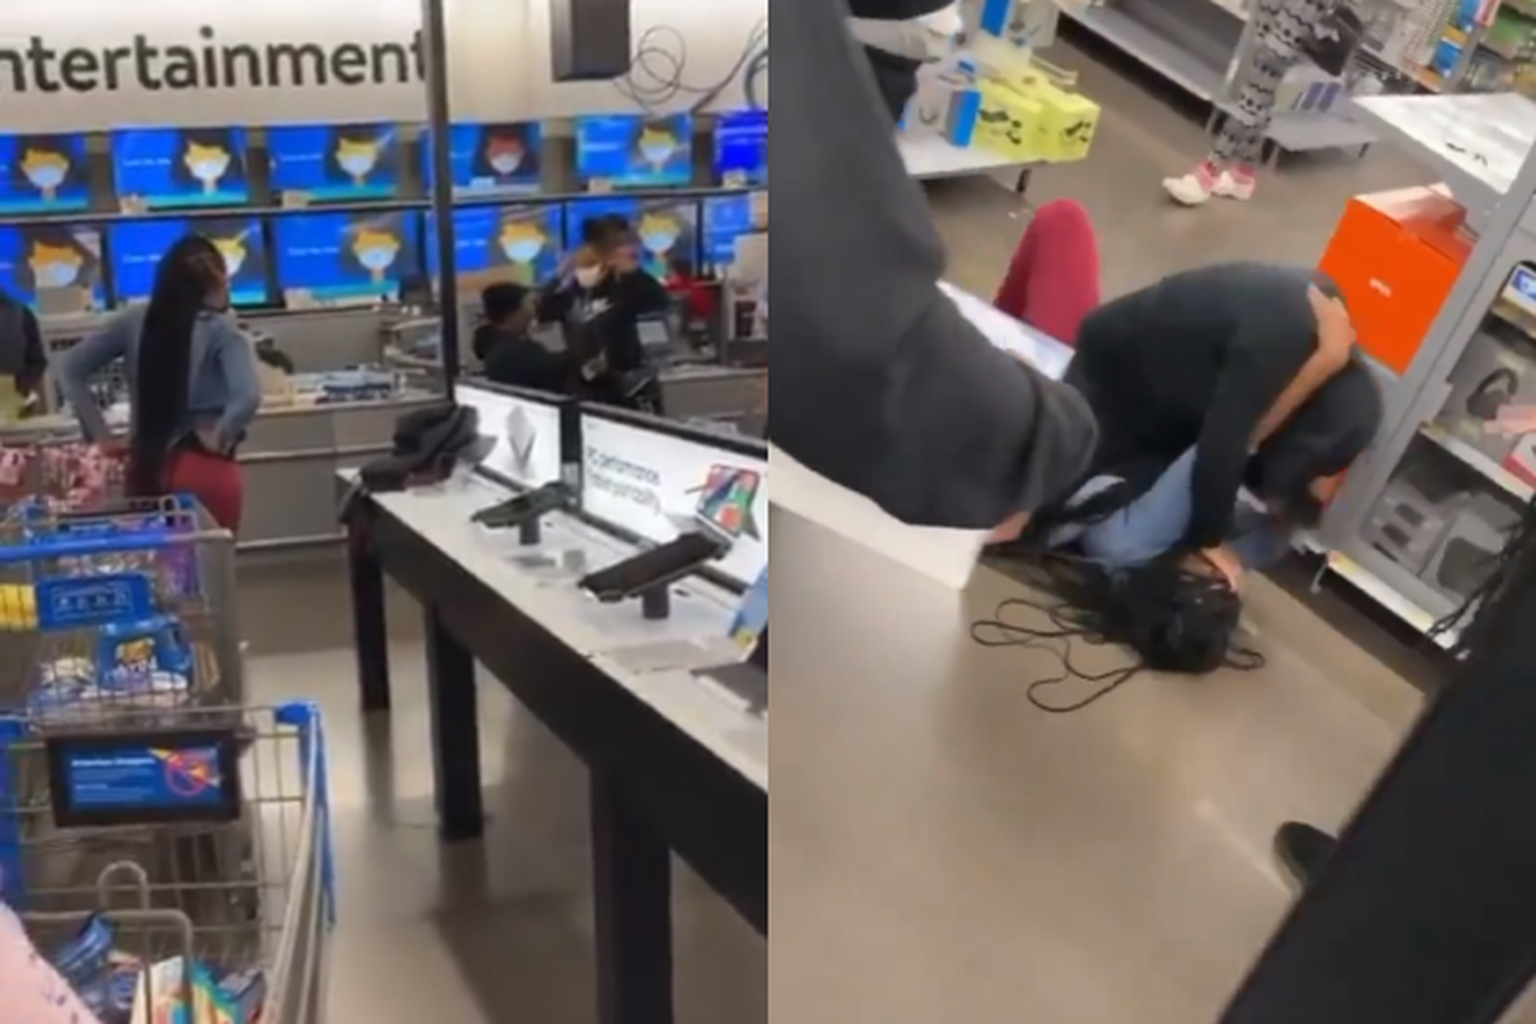 Kaks ameeriklannat läksid Walmartis kaklema.